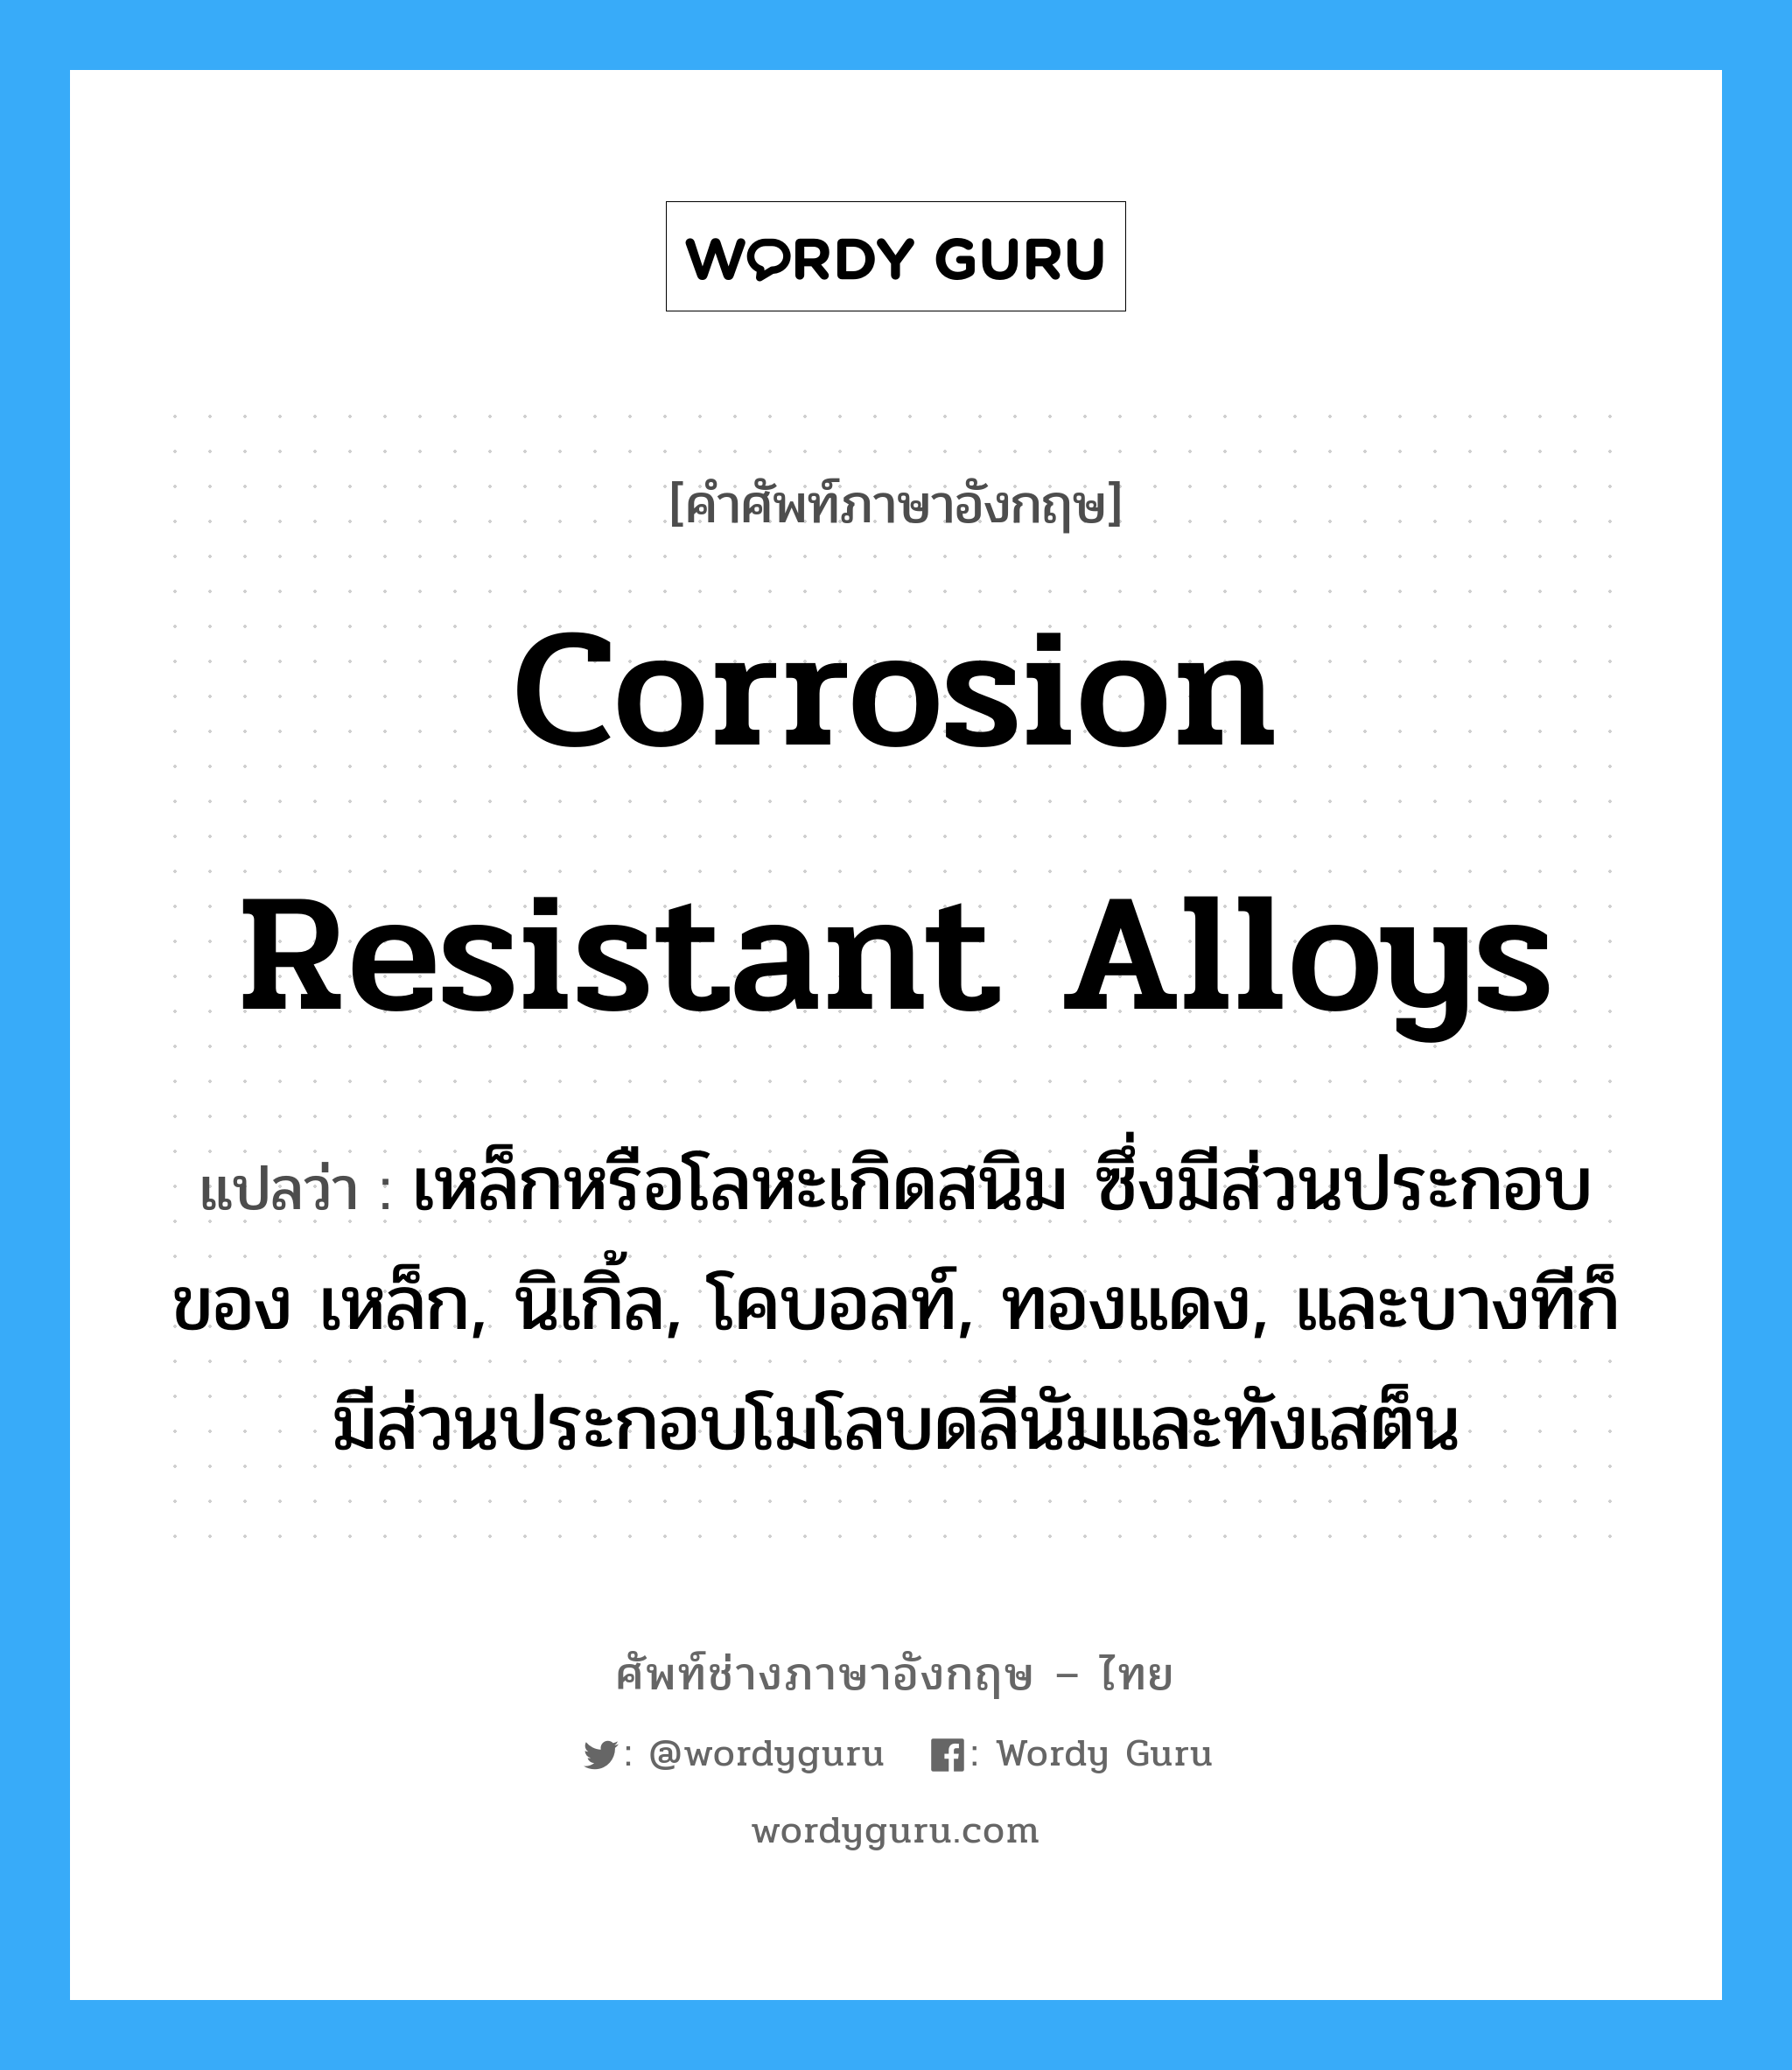 corrosion resistant alloys แปลว่า?, คำศัพท์ช่างภาษาอังกฤษ - ไทย corrosion resistant alloys คำศัพท์ภาษาอังกฤษ corrosion resistant alloys แปลว่า เหล็กหรือโลหะเกิดสนิม ซึ่งมีส่วนประกอบของ เหล็ก, นิเกิ้ล, โคบอลท์, ทองแดง, และบางทีก็มีส่วนประกอบโมโลบดลีนัมและทังเสต็น